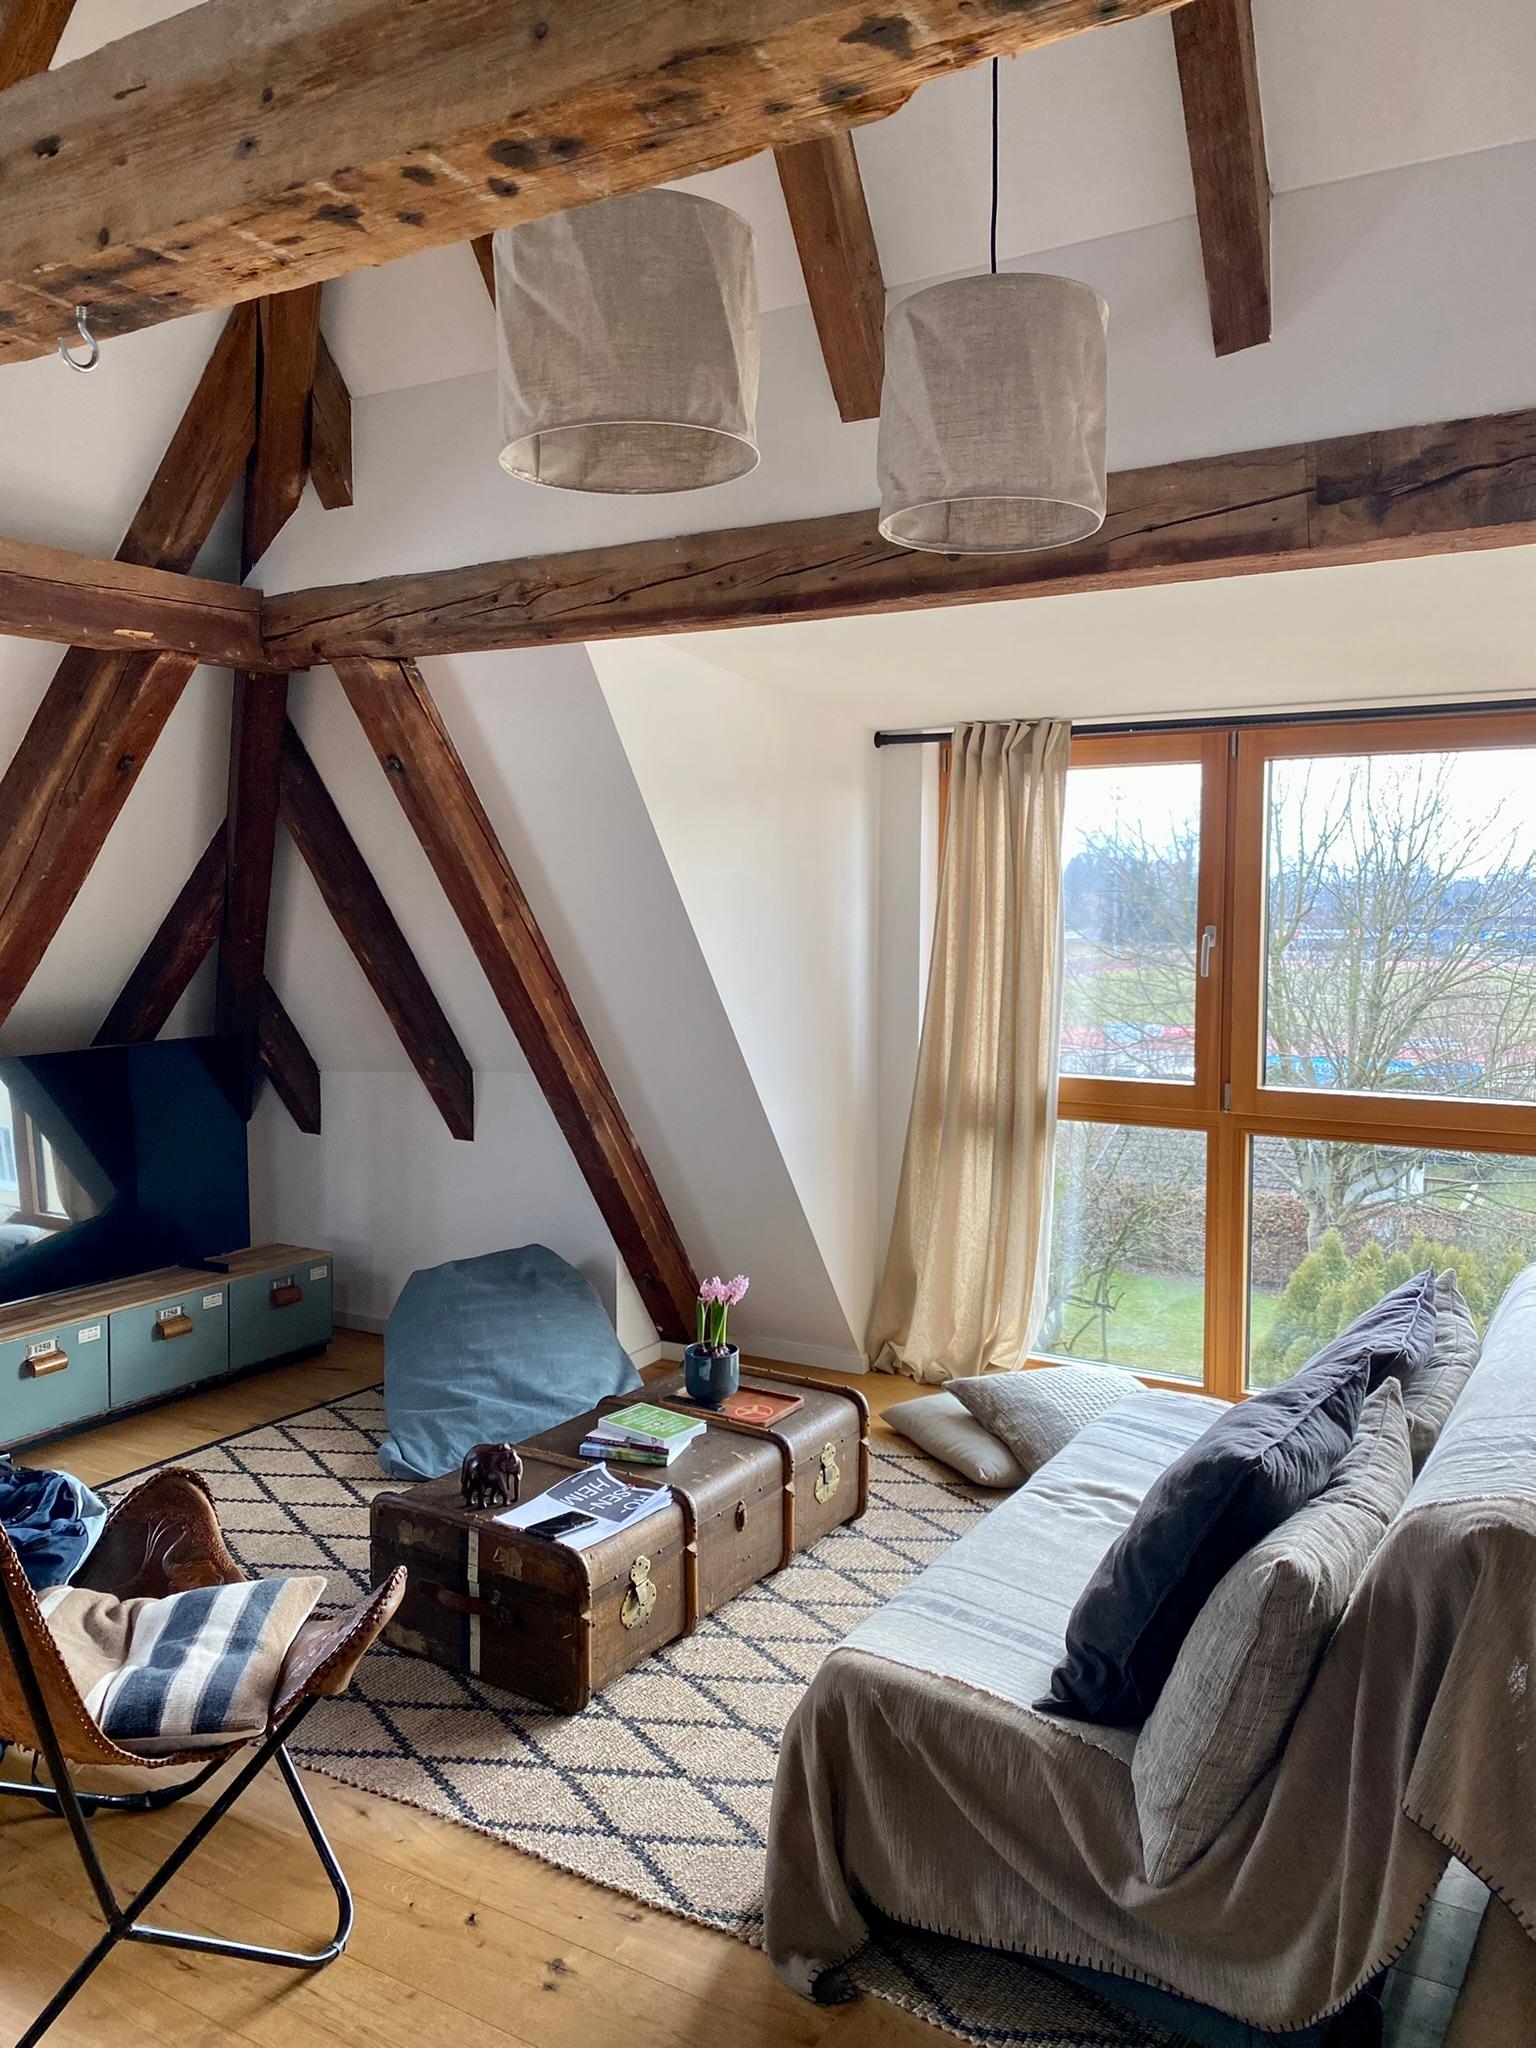 Fantastisches Loft in Bayern auf Airbnb entdeckt! #airbnb #bayern #kurzurlaub #loft #dachgeschoss #holzbalken 